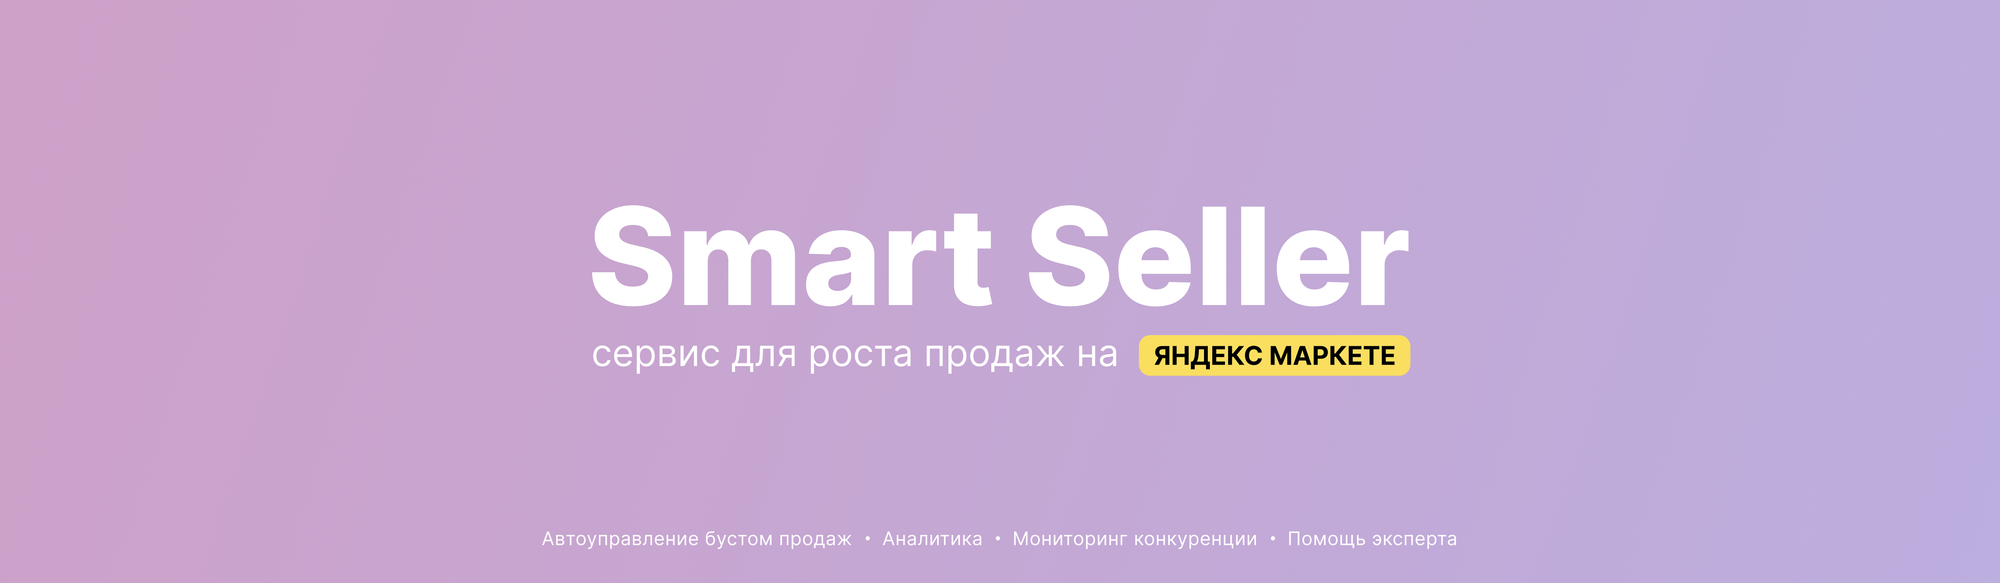 Блог Smart Seller